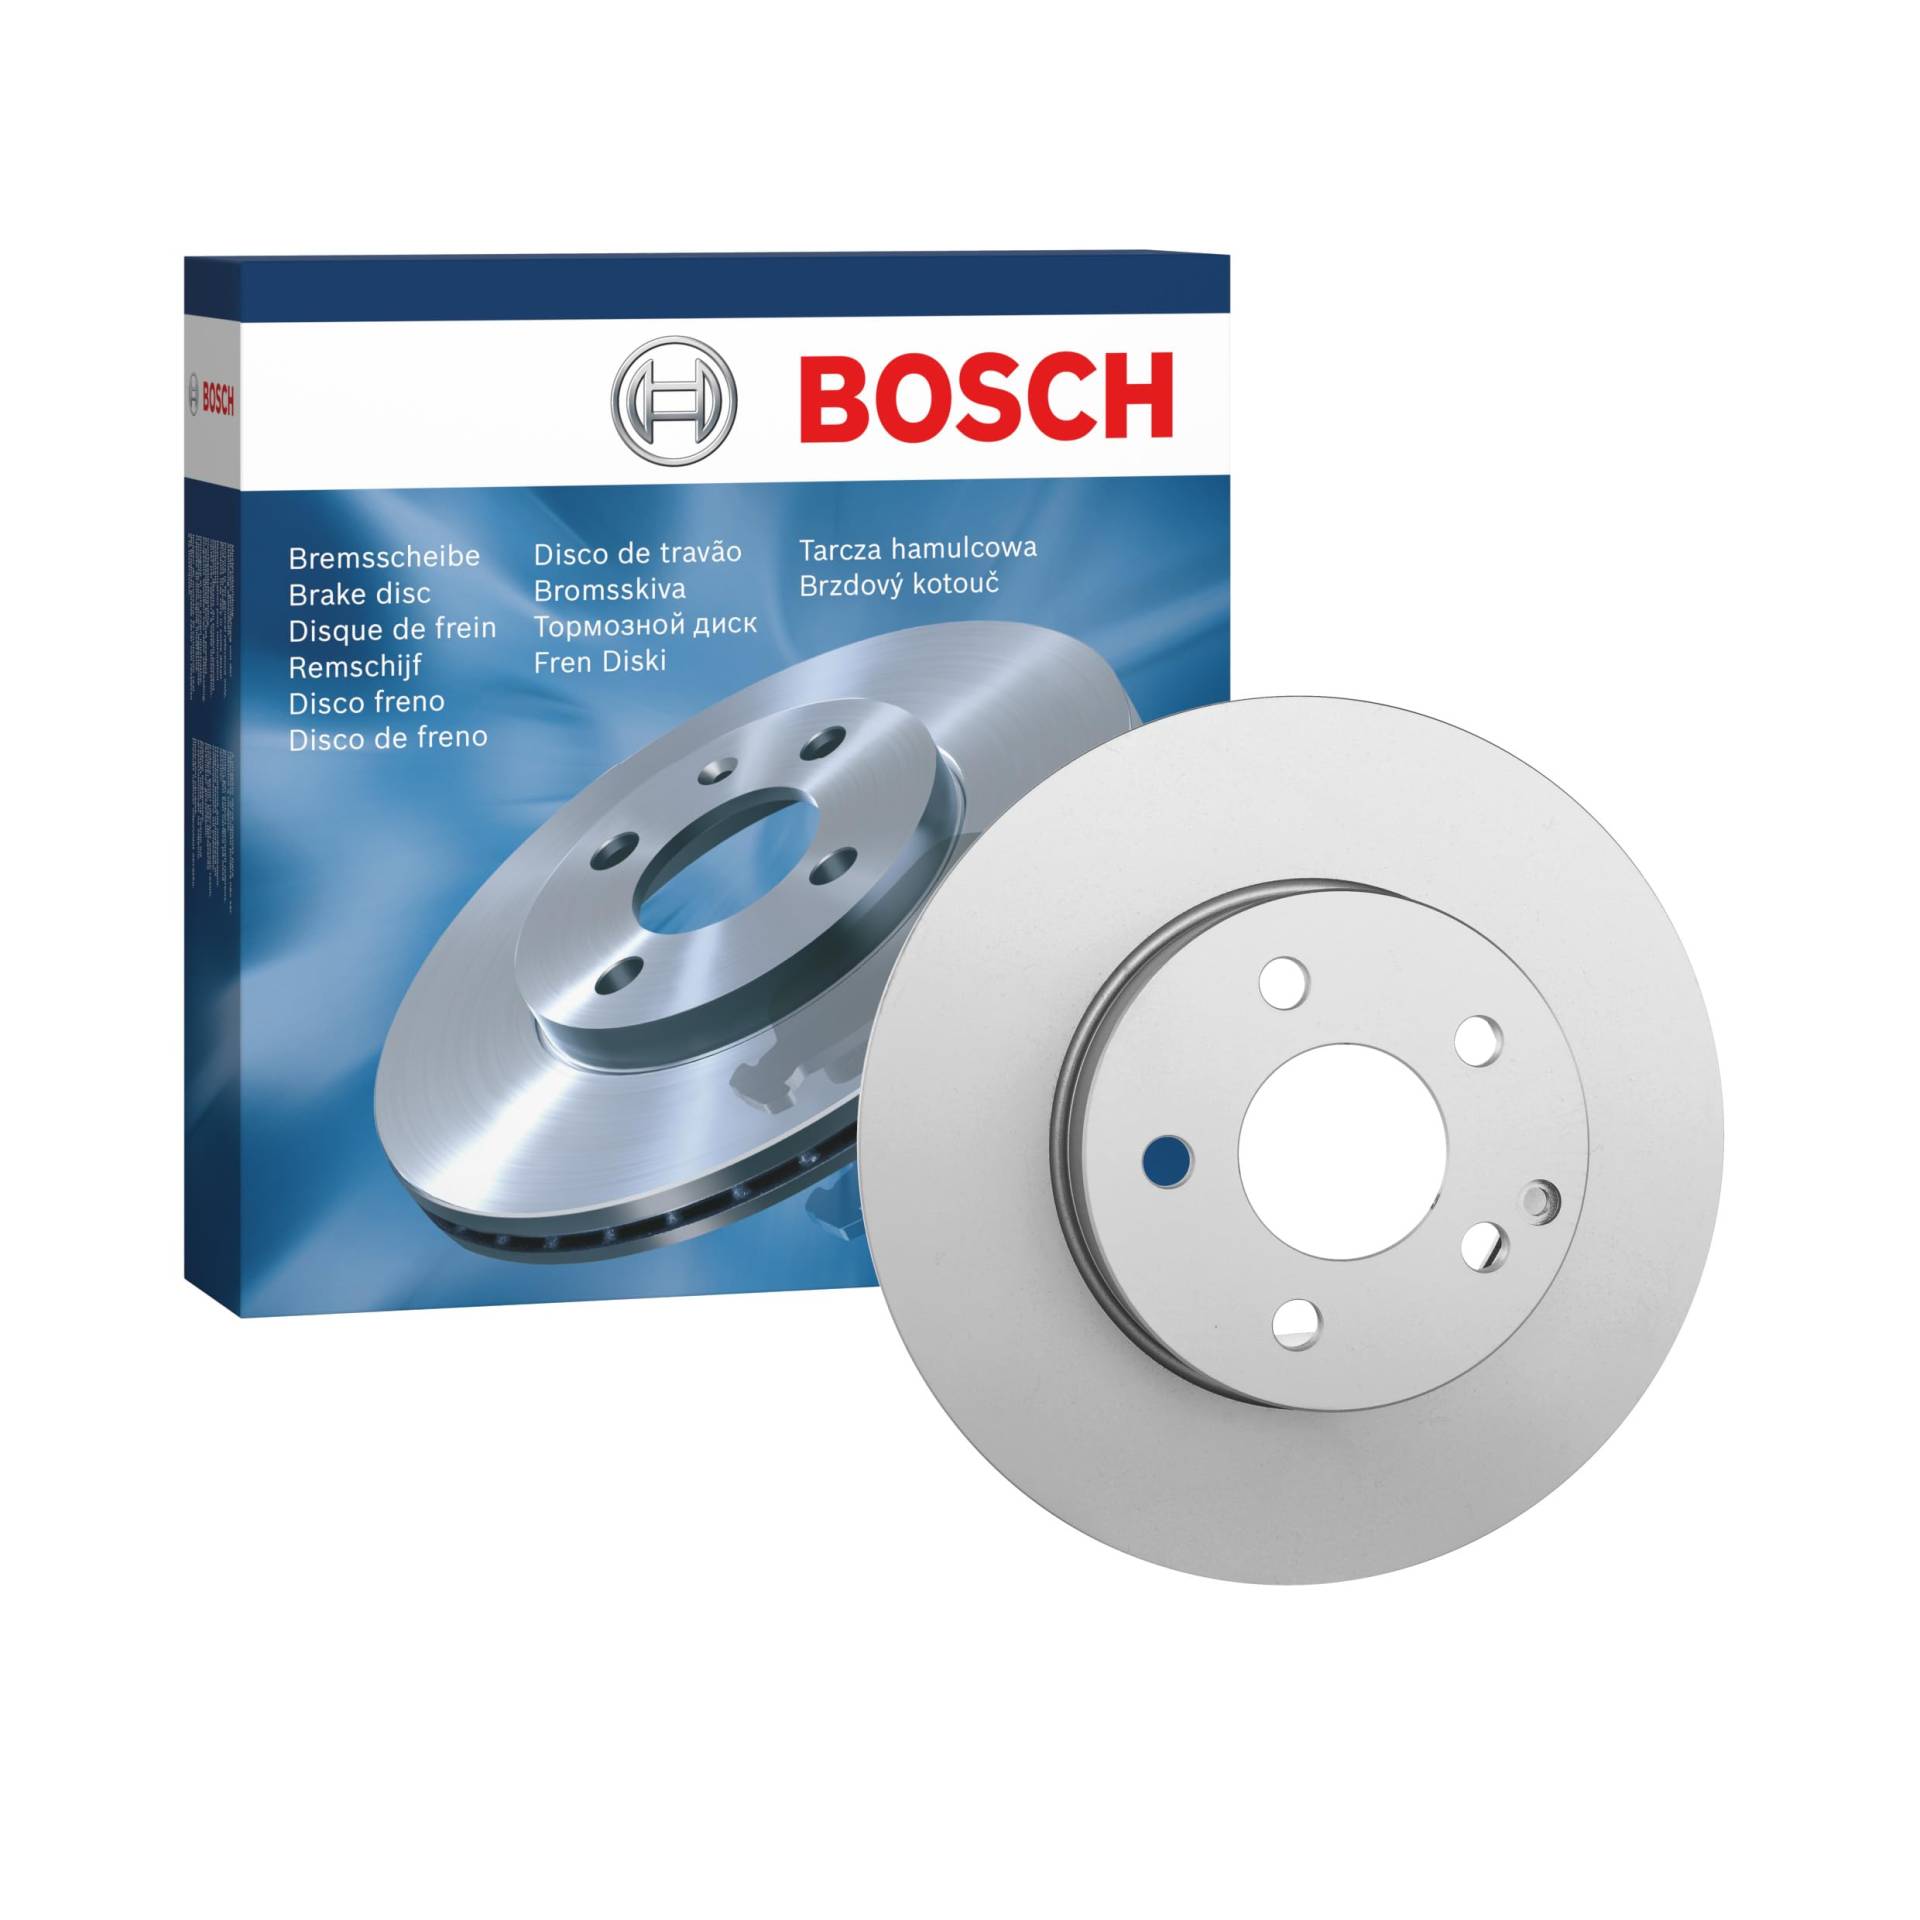 Bosch BD1301 Bremsscheiben - Vorderachse - ECE-R90 Zertifizierung - eine Bremsscheibe von Bosch Automotive